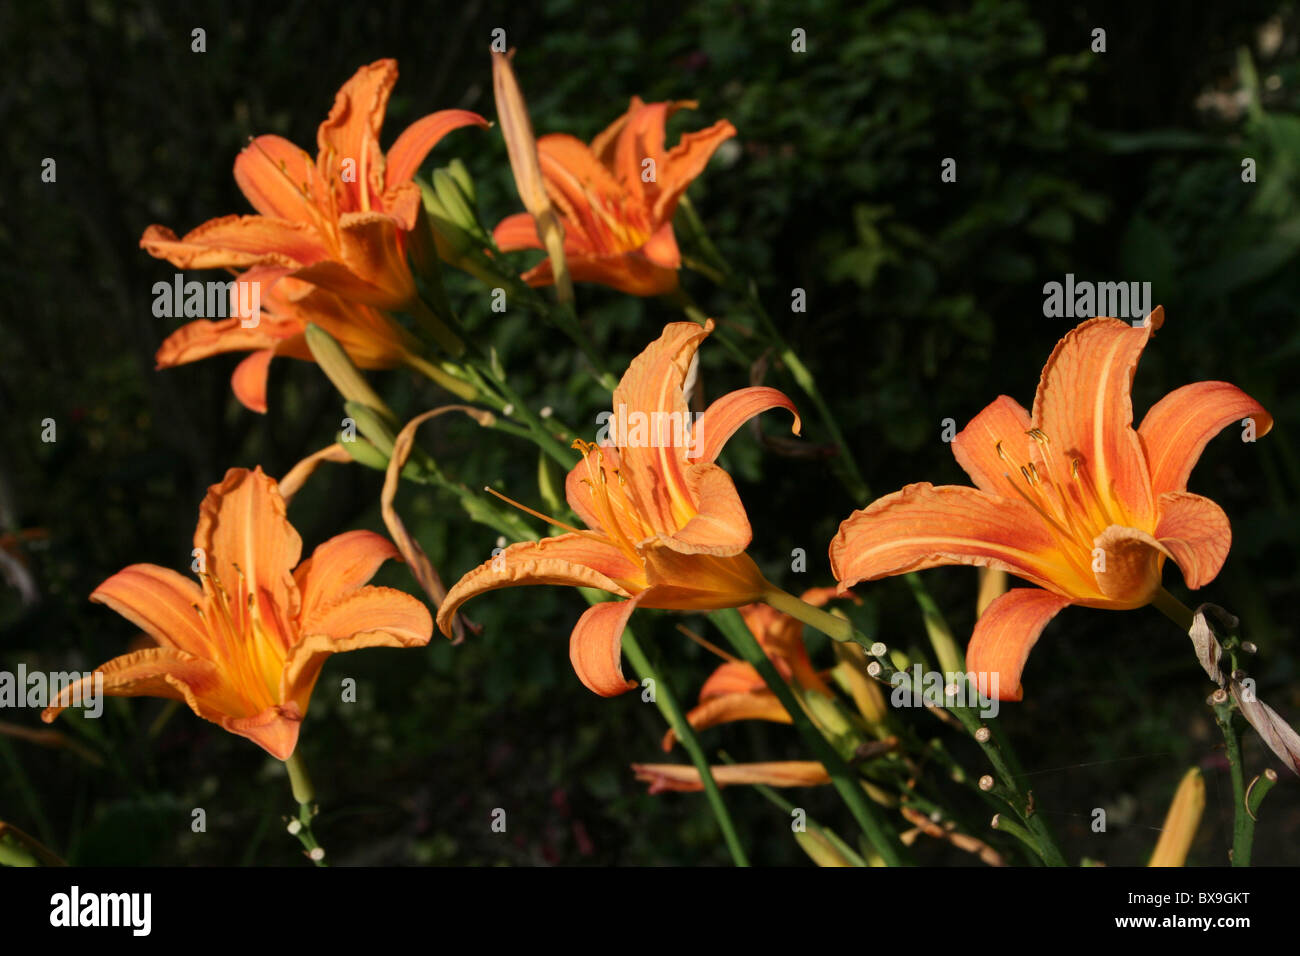 Orange Coloured Day Lilies Hemerocallis Taken at Wendo Genet, Ethiopia Stock Photo